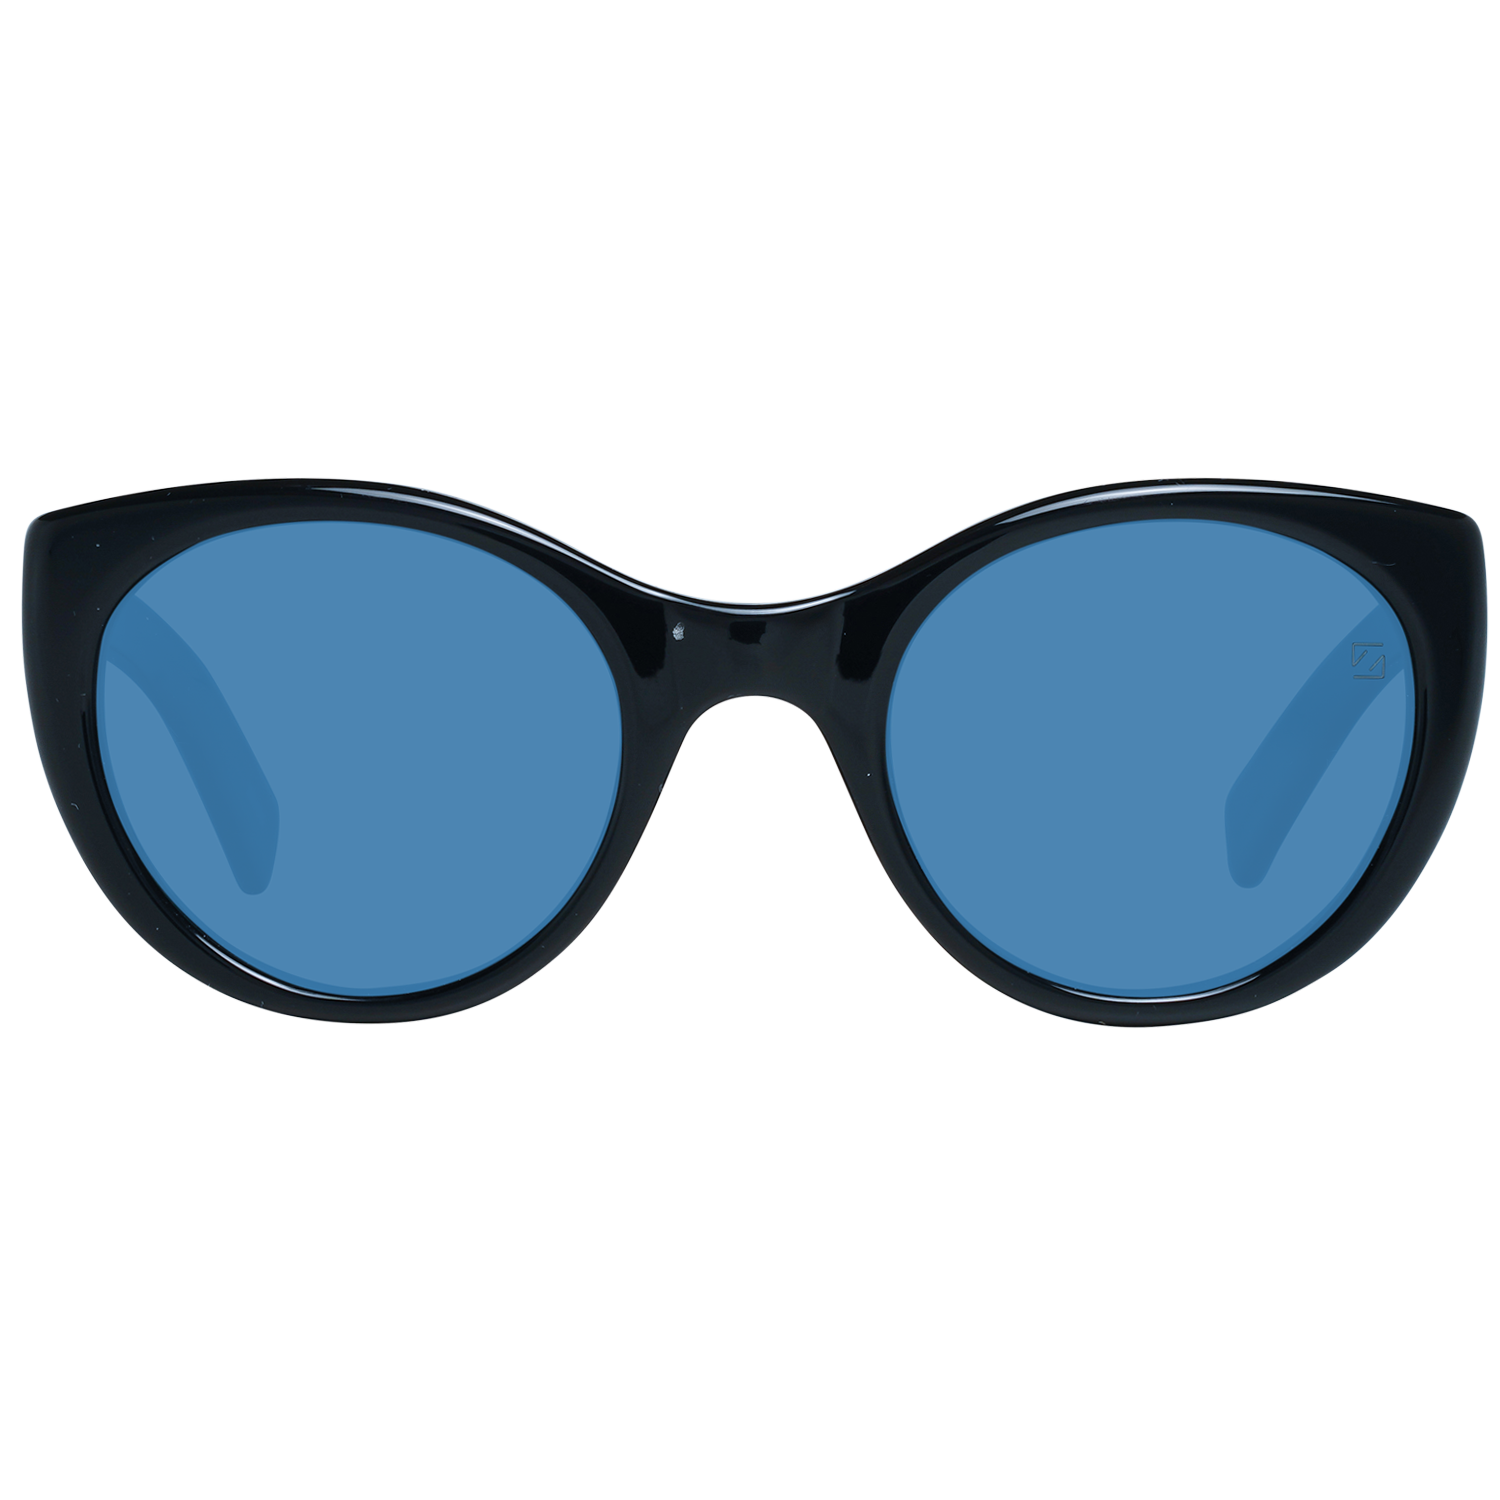 Zegna Couture Sunglasses Zegna Couture Sunglasses ZC0009 50 01V Eyeglasses Eyewear UK USA Australia 